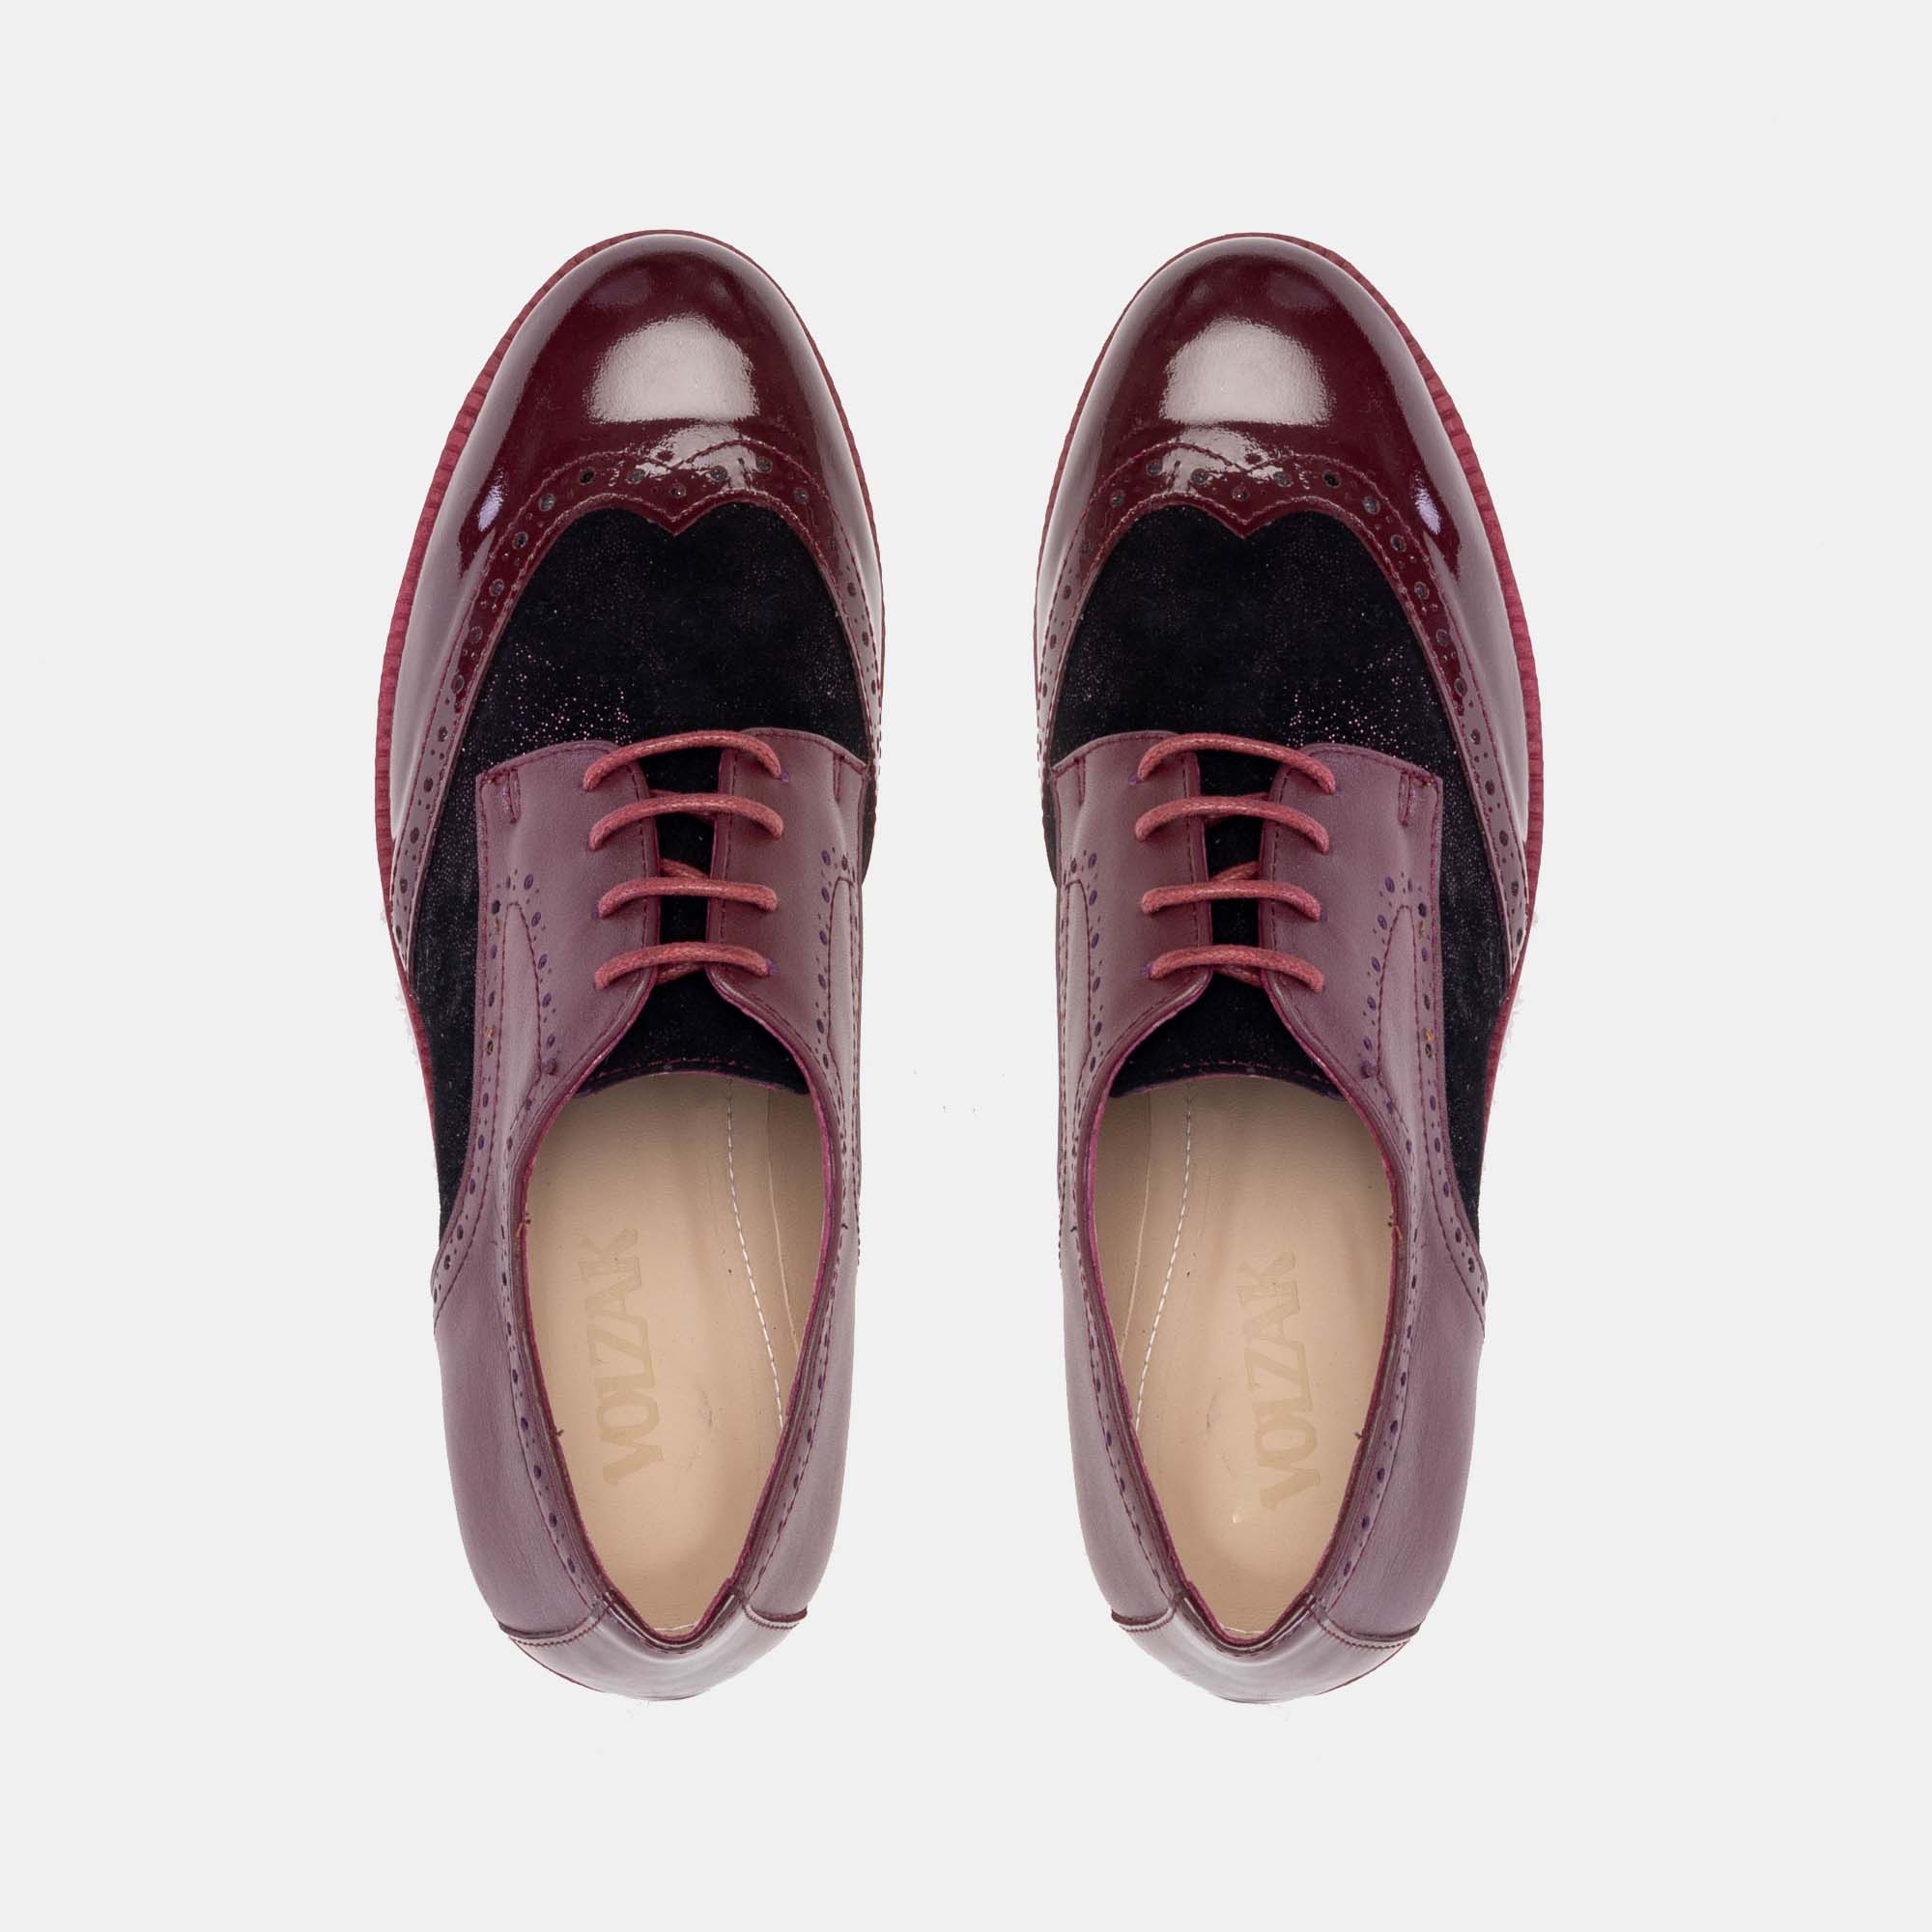 ''579 Chaussure en cuir vernis Bordeaux